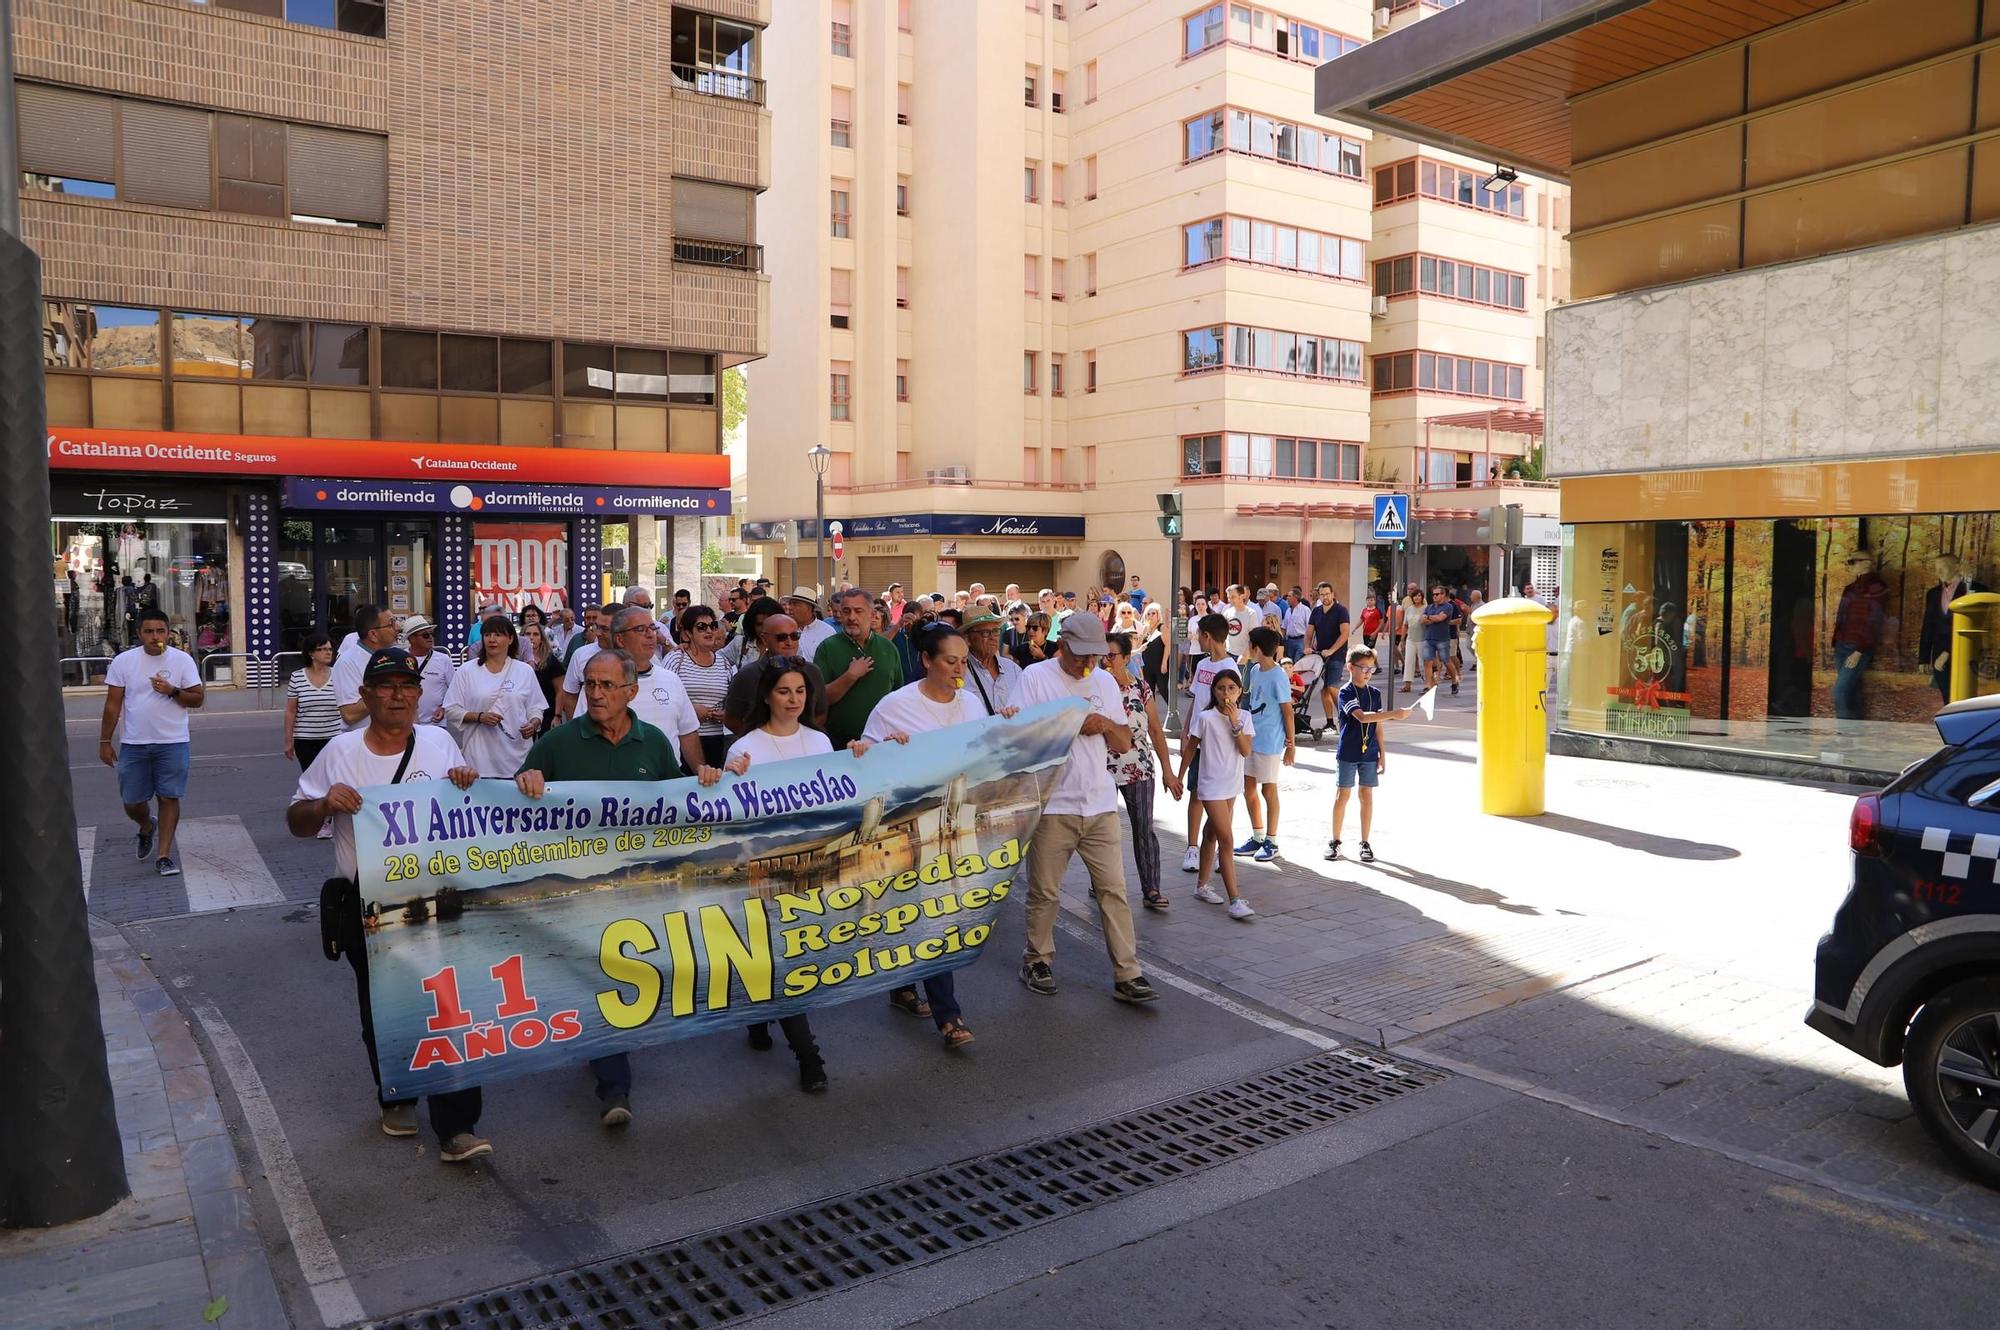 Manifestación por el XI Aniversario de la riada de San Wenceslao